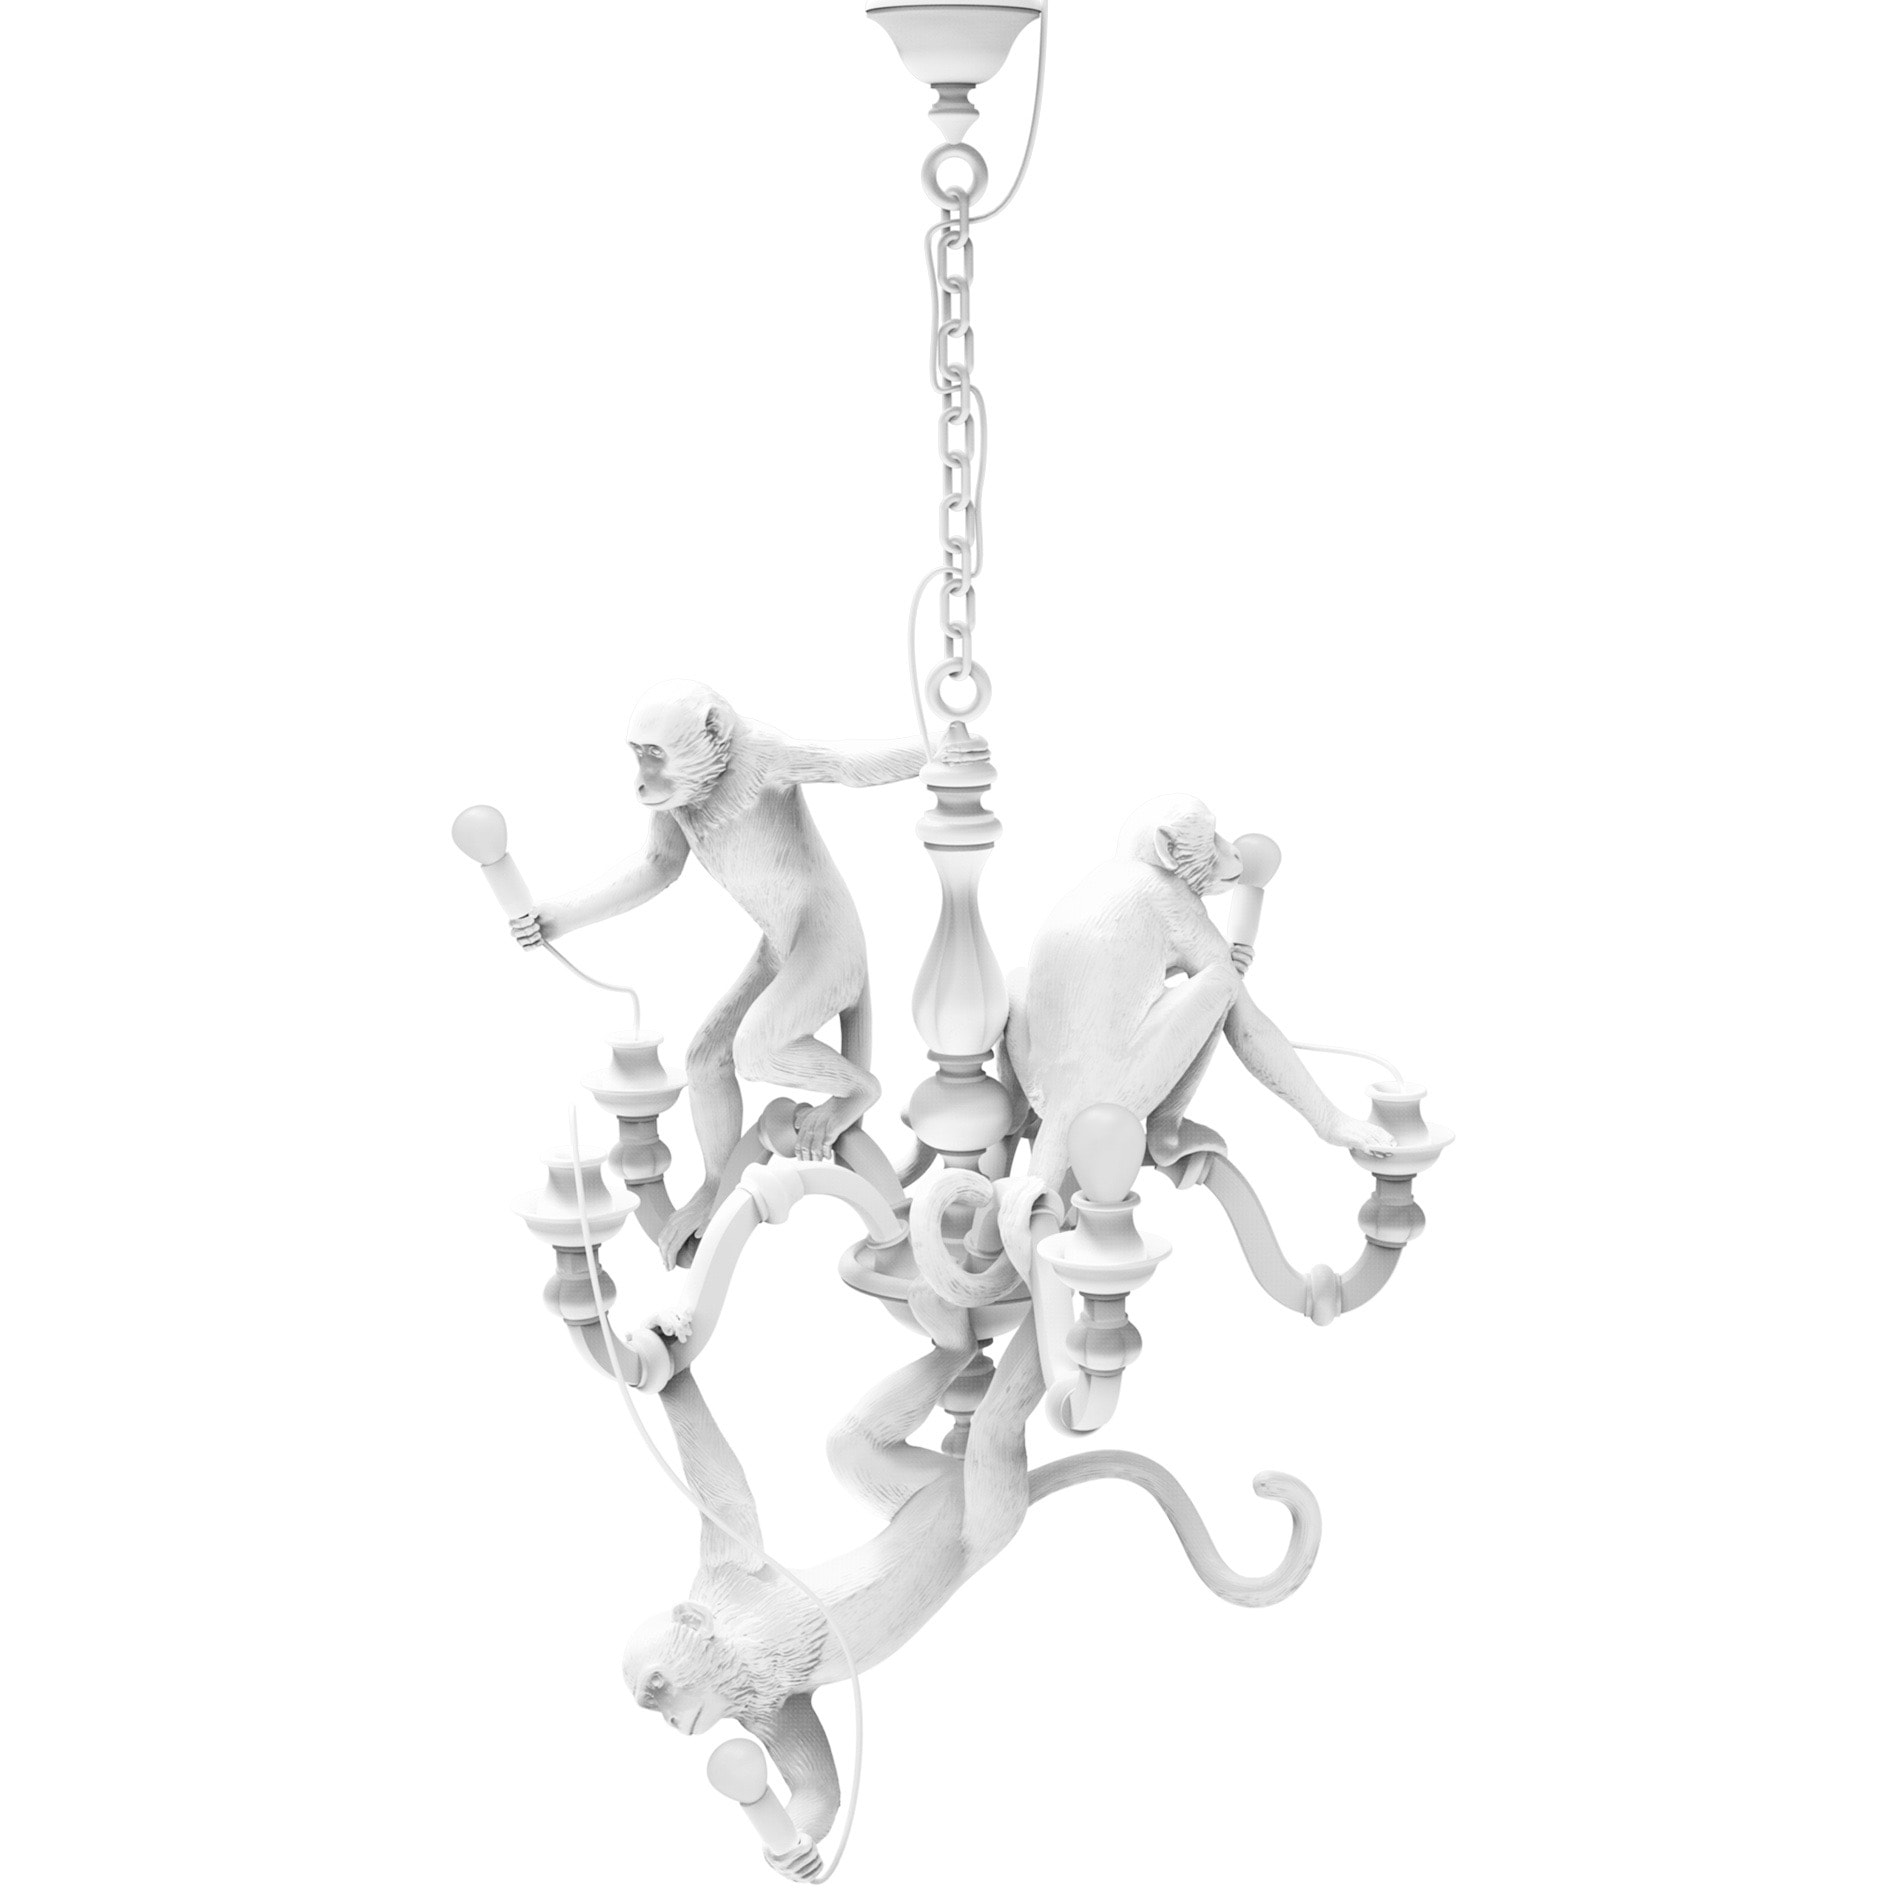 Monkey chandelier taklampa vit